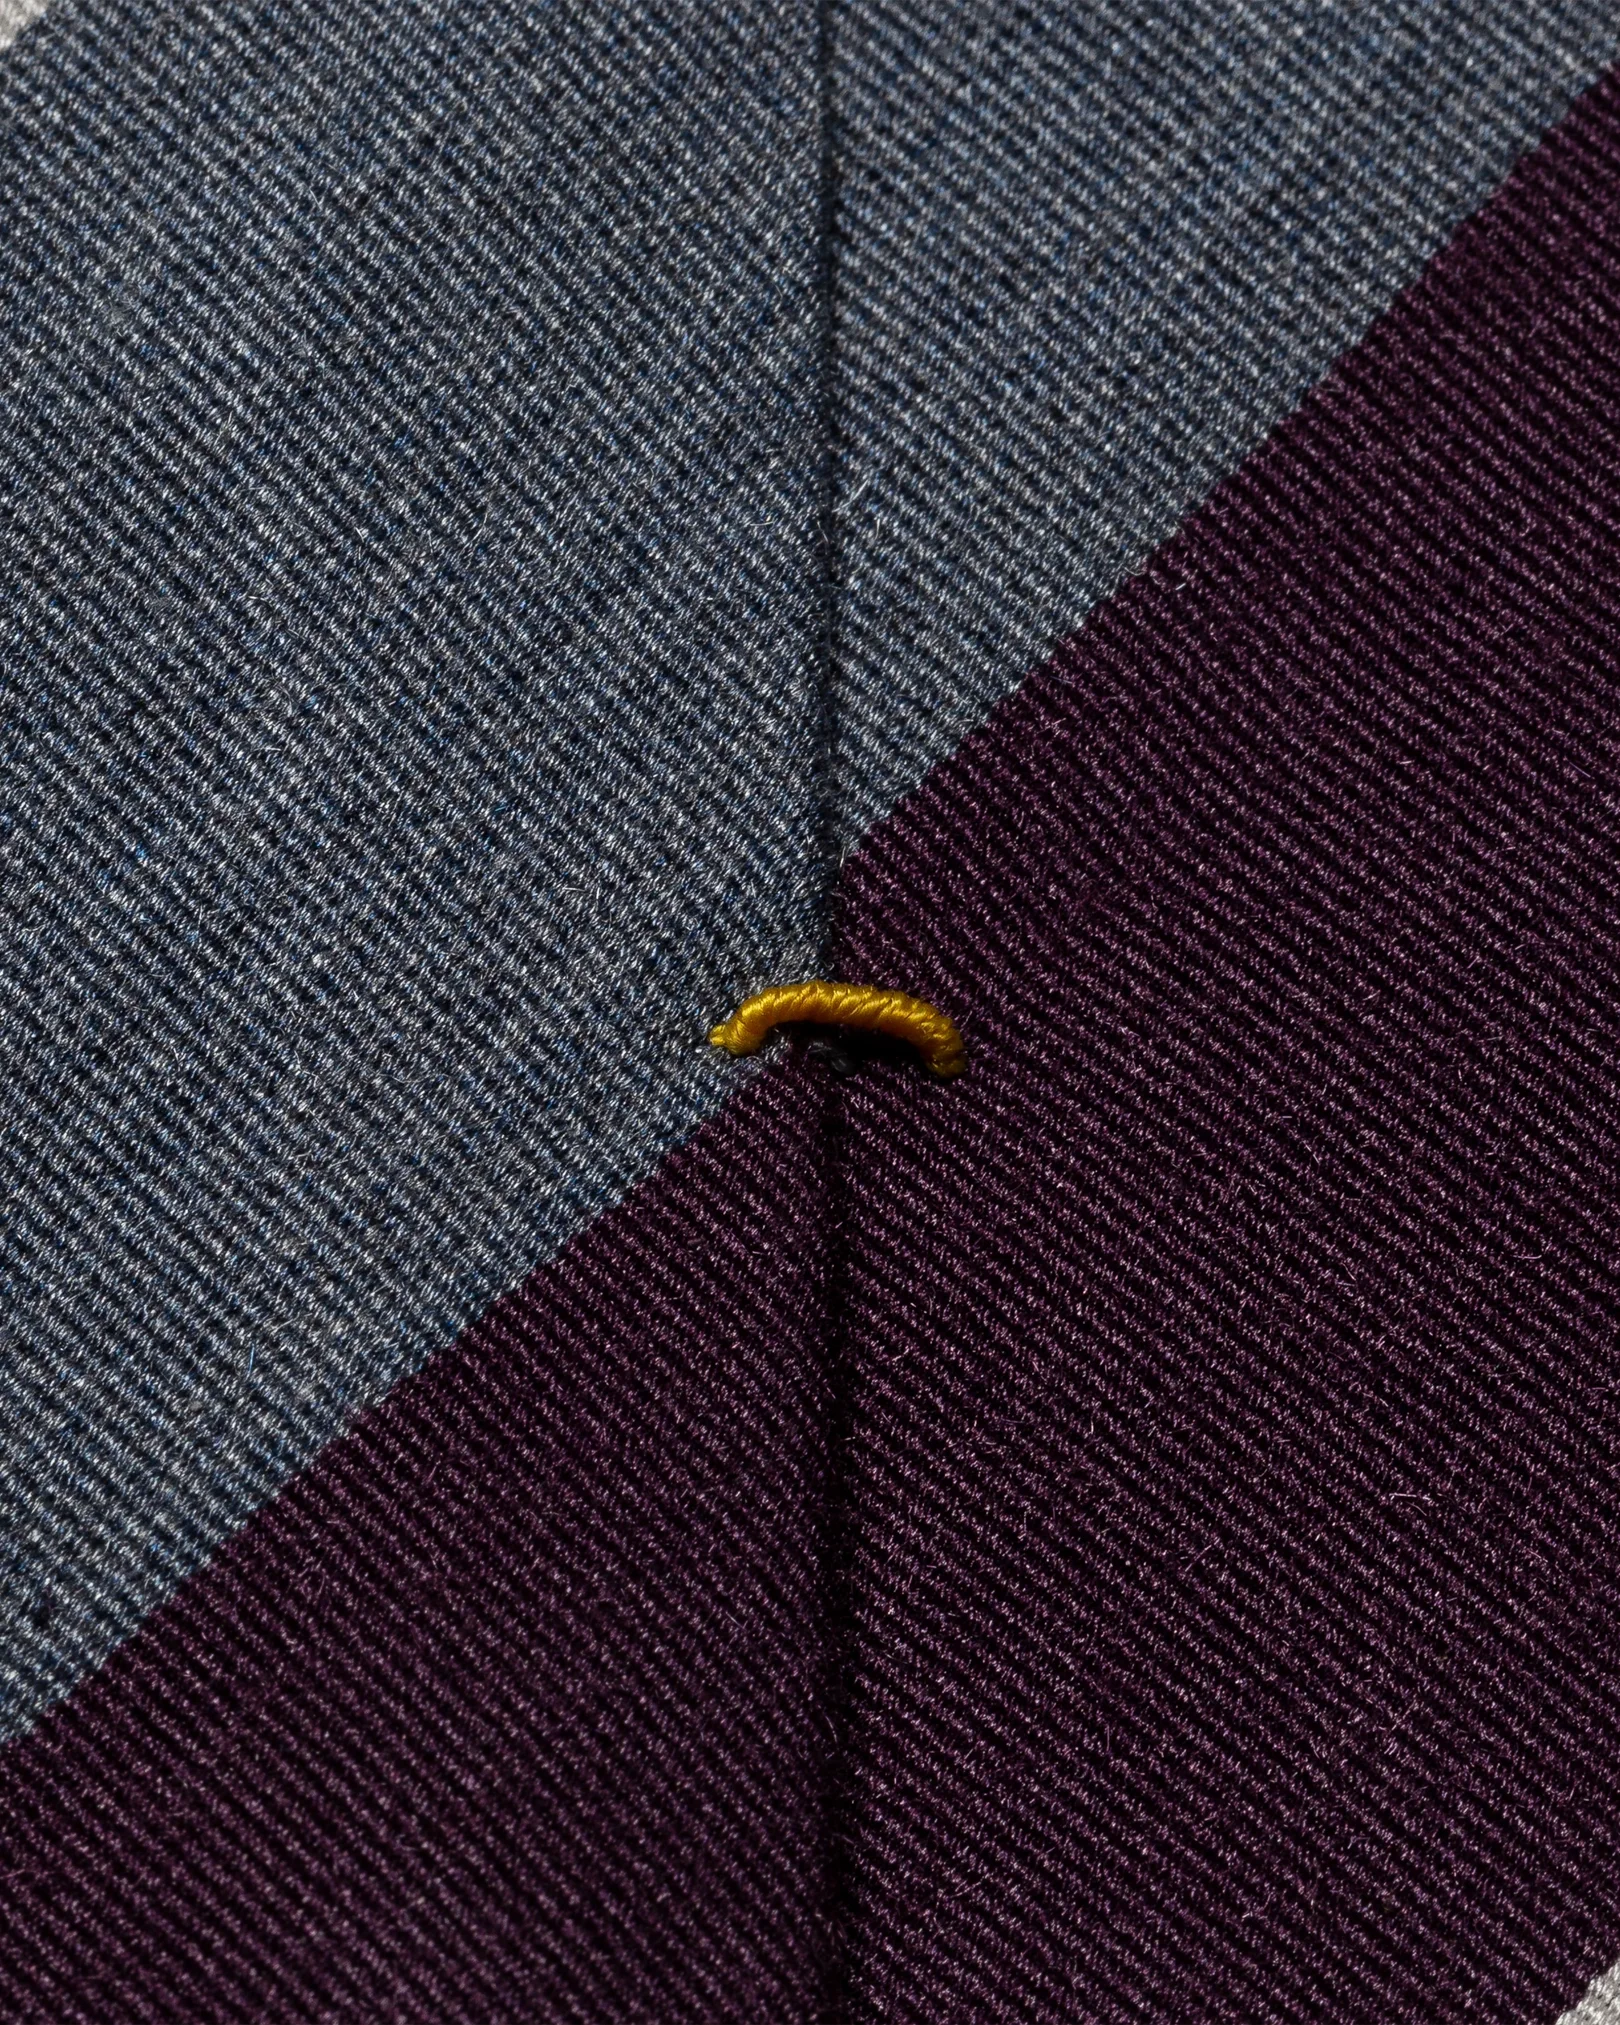 Eton - dark purple striped silk tie